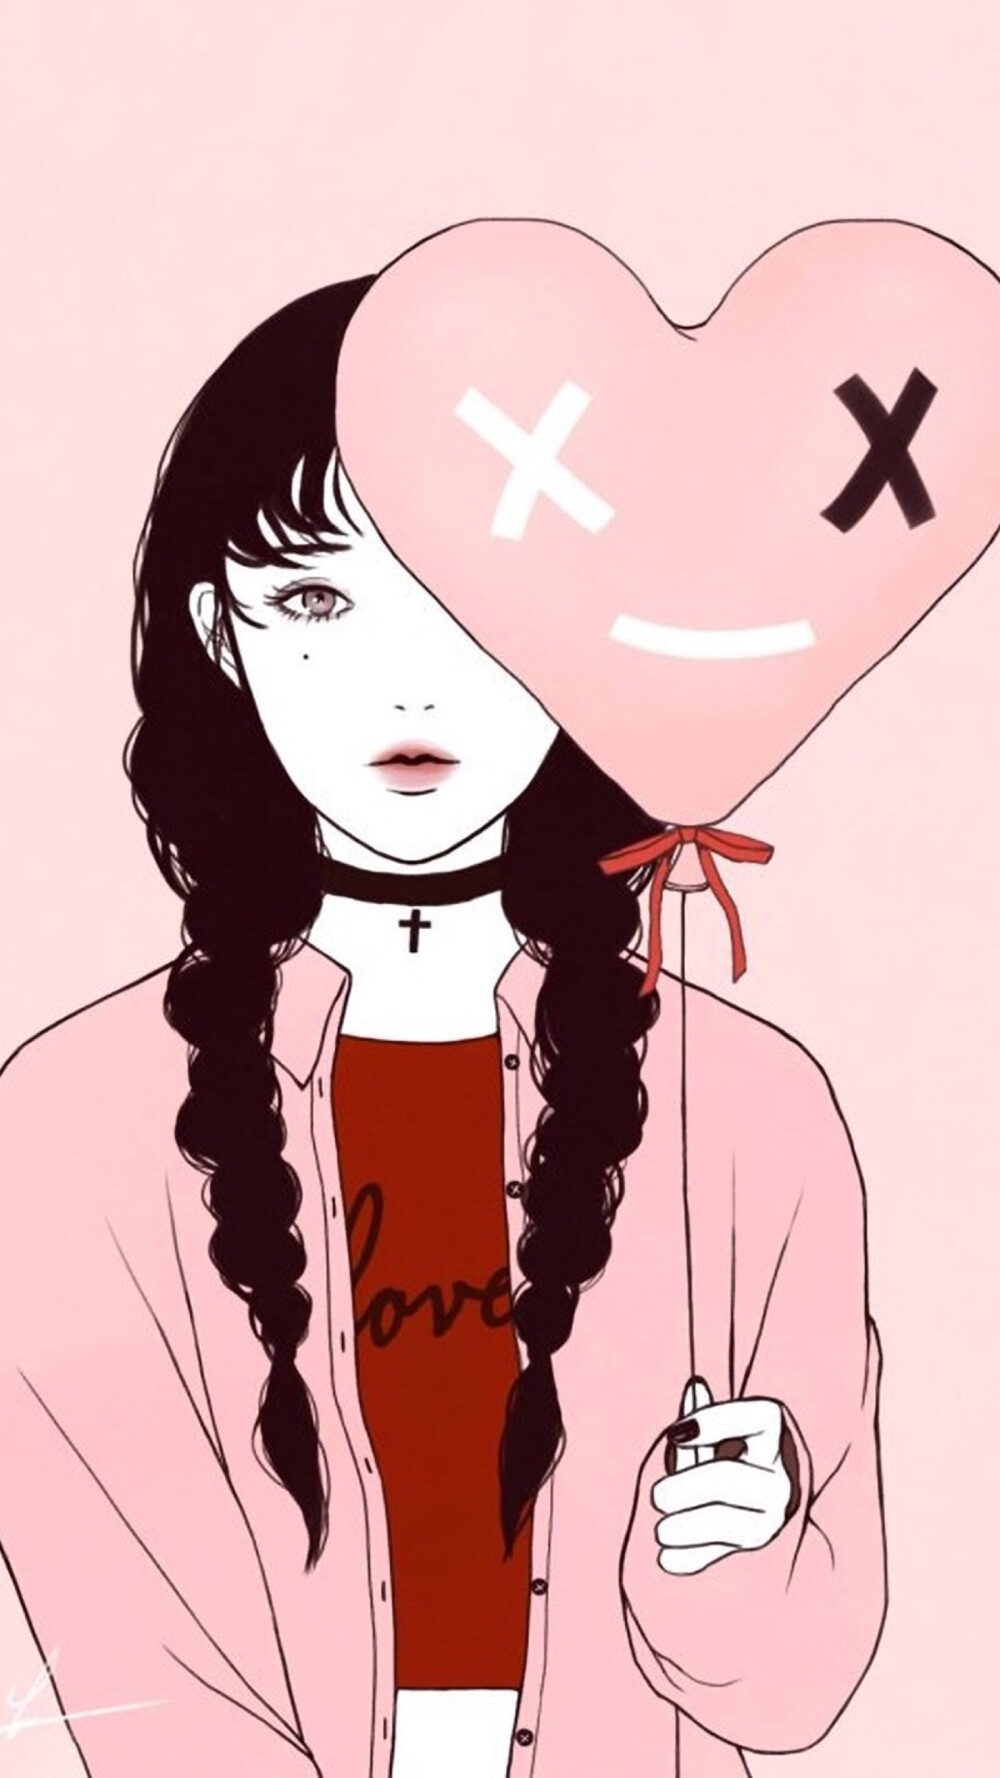 女生 q版 微信 qq 微博 )女孩 韩国唯美插画手绘动漫卡通可爱个性经典